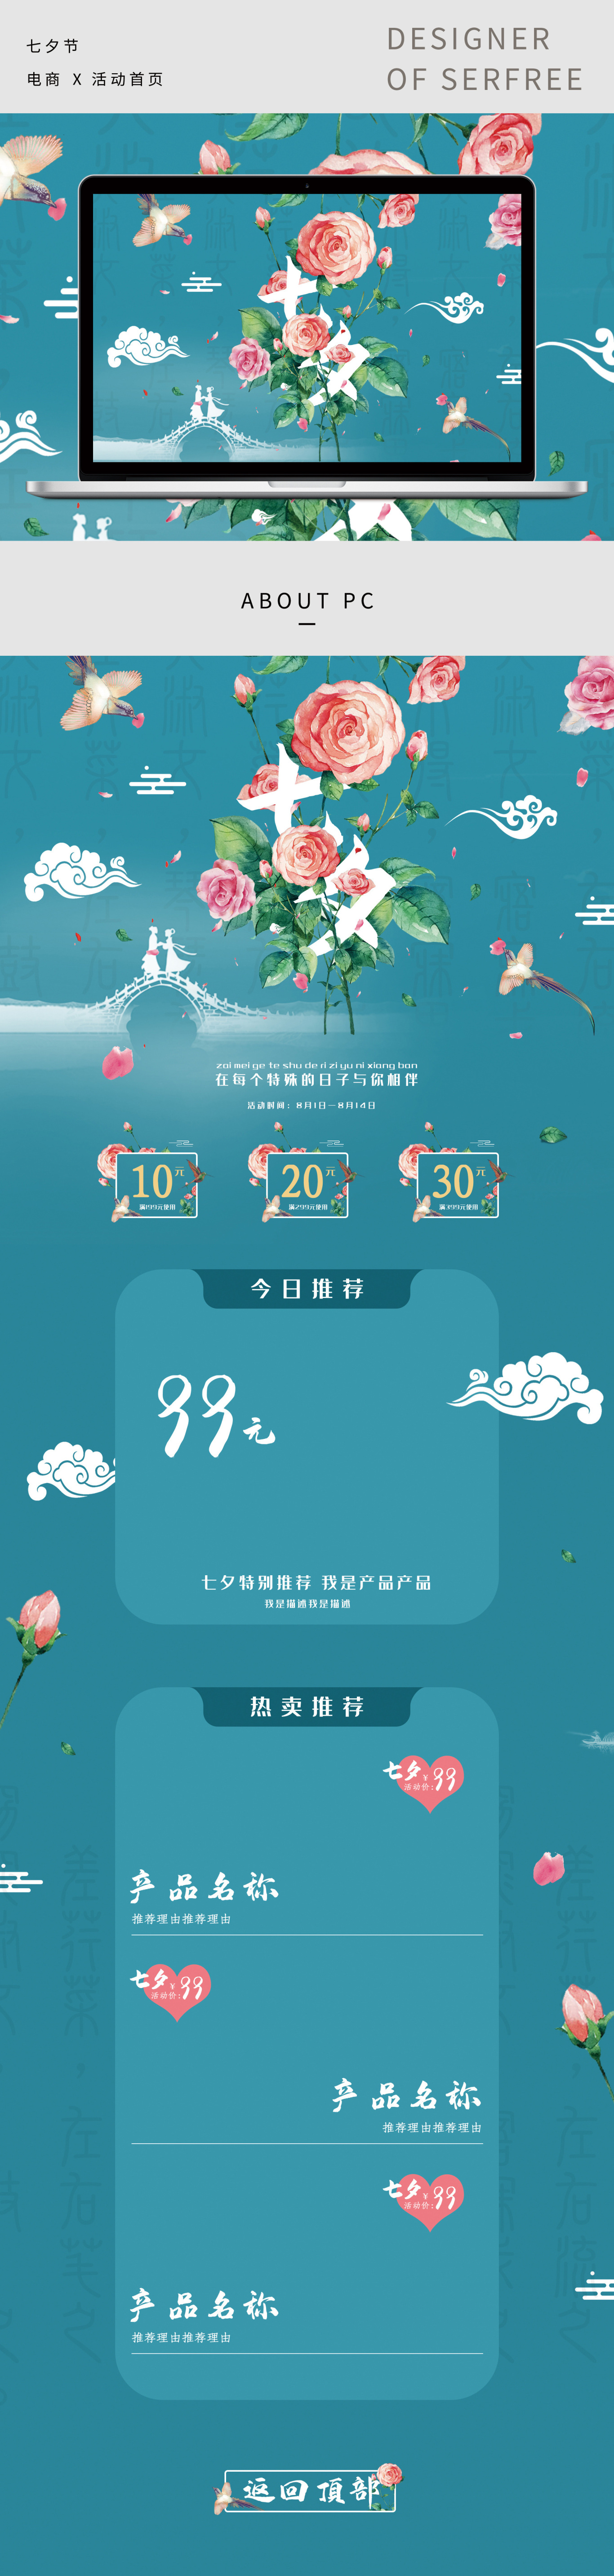 传统节日七夕节通用店铺装修海报设计图0